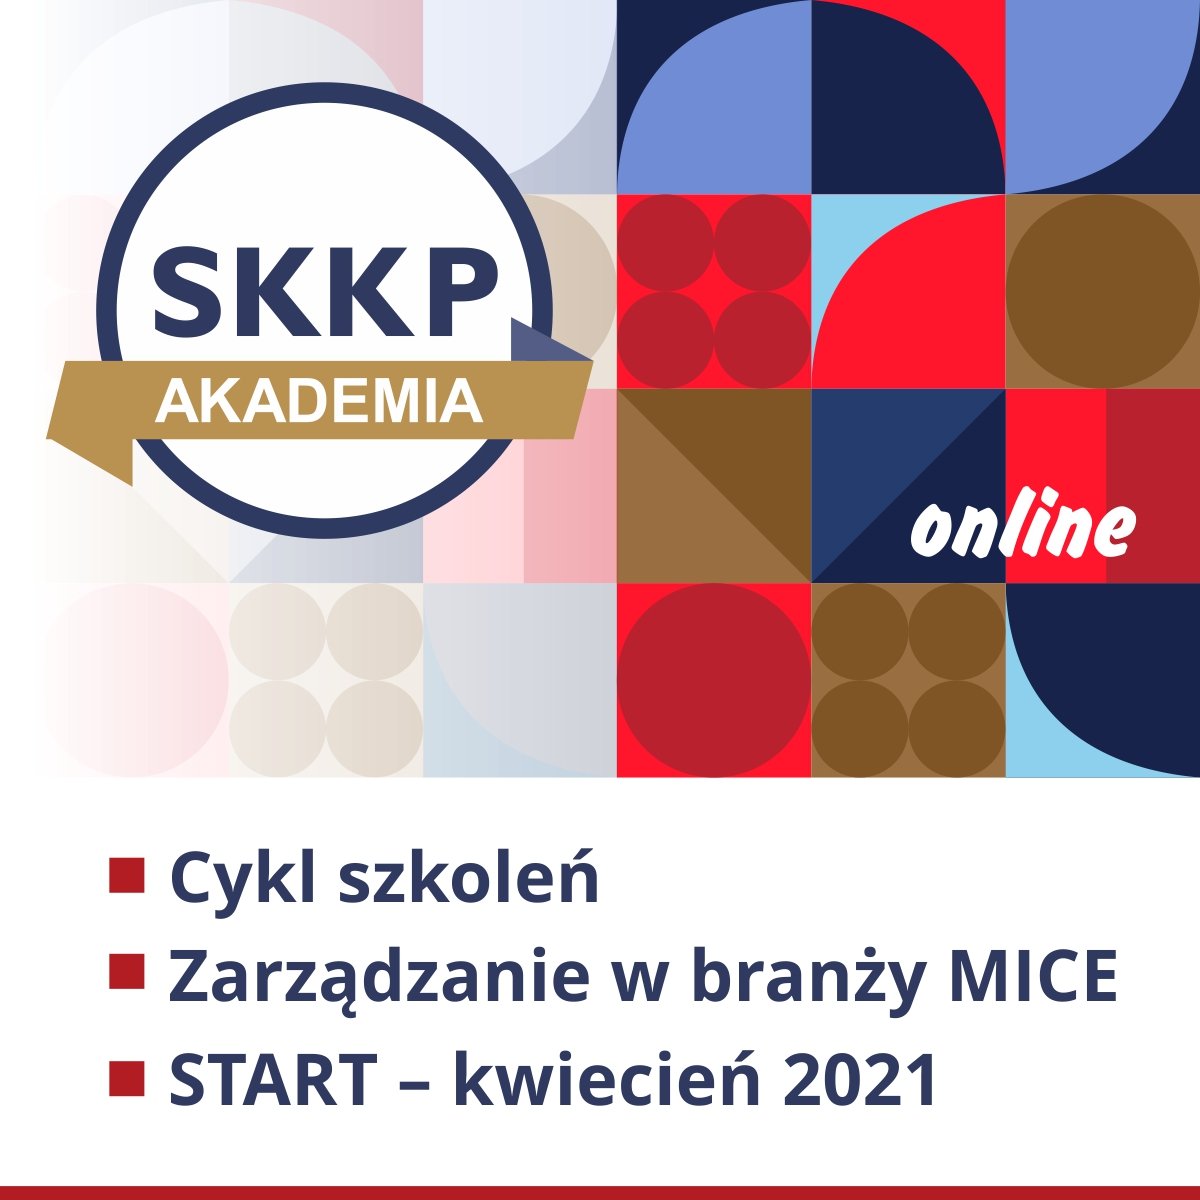 Cykl kursów online związanych z branżą MICE - rusza nowy projekt AKADEMII SKKP ONLINE